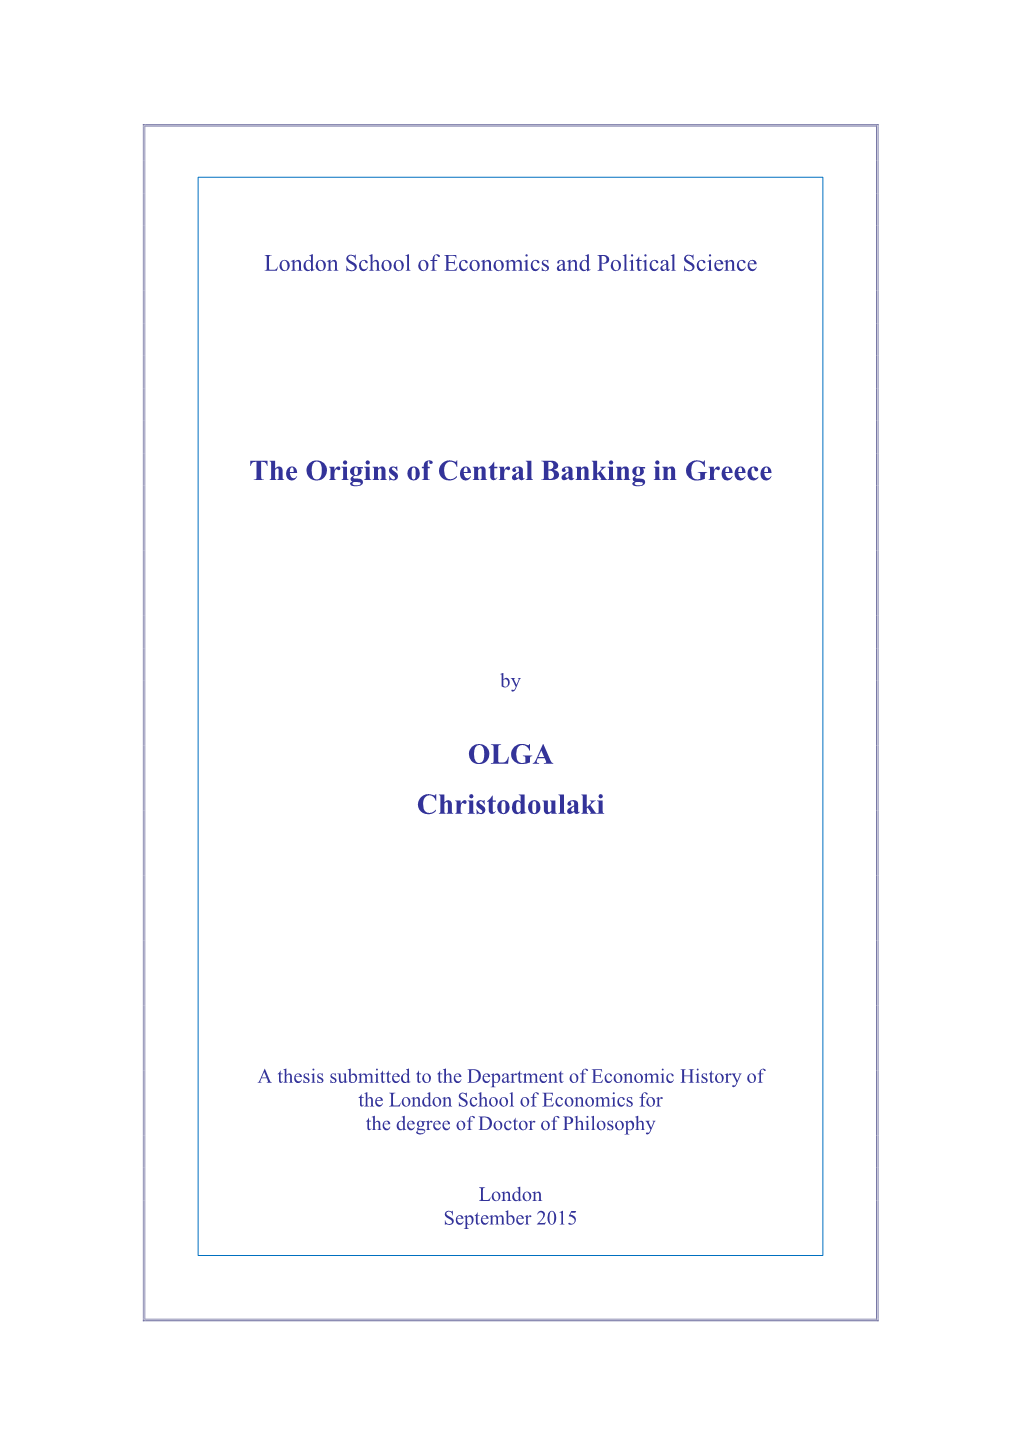 The Origins of Central Banking in Greece OLGA Christodoulaki